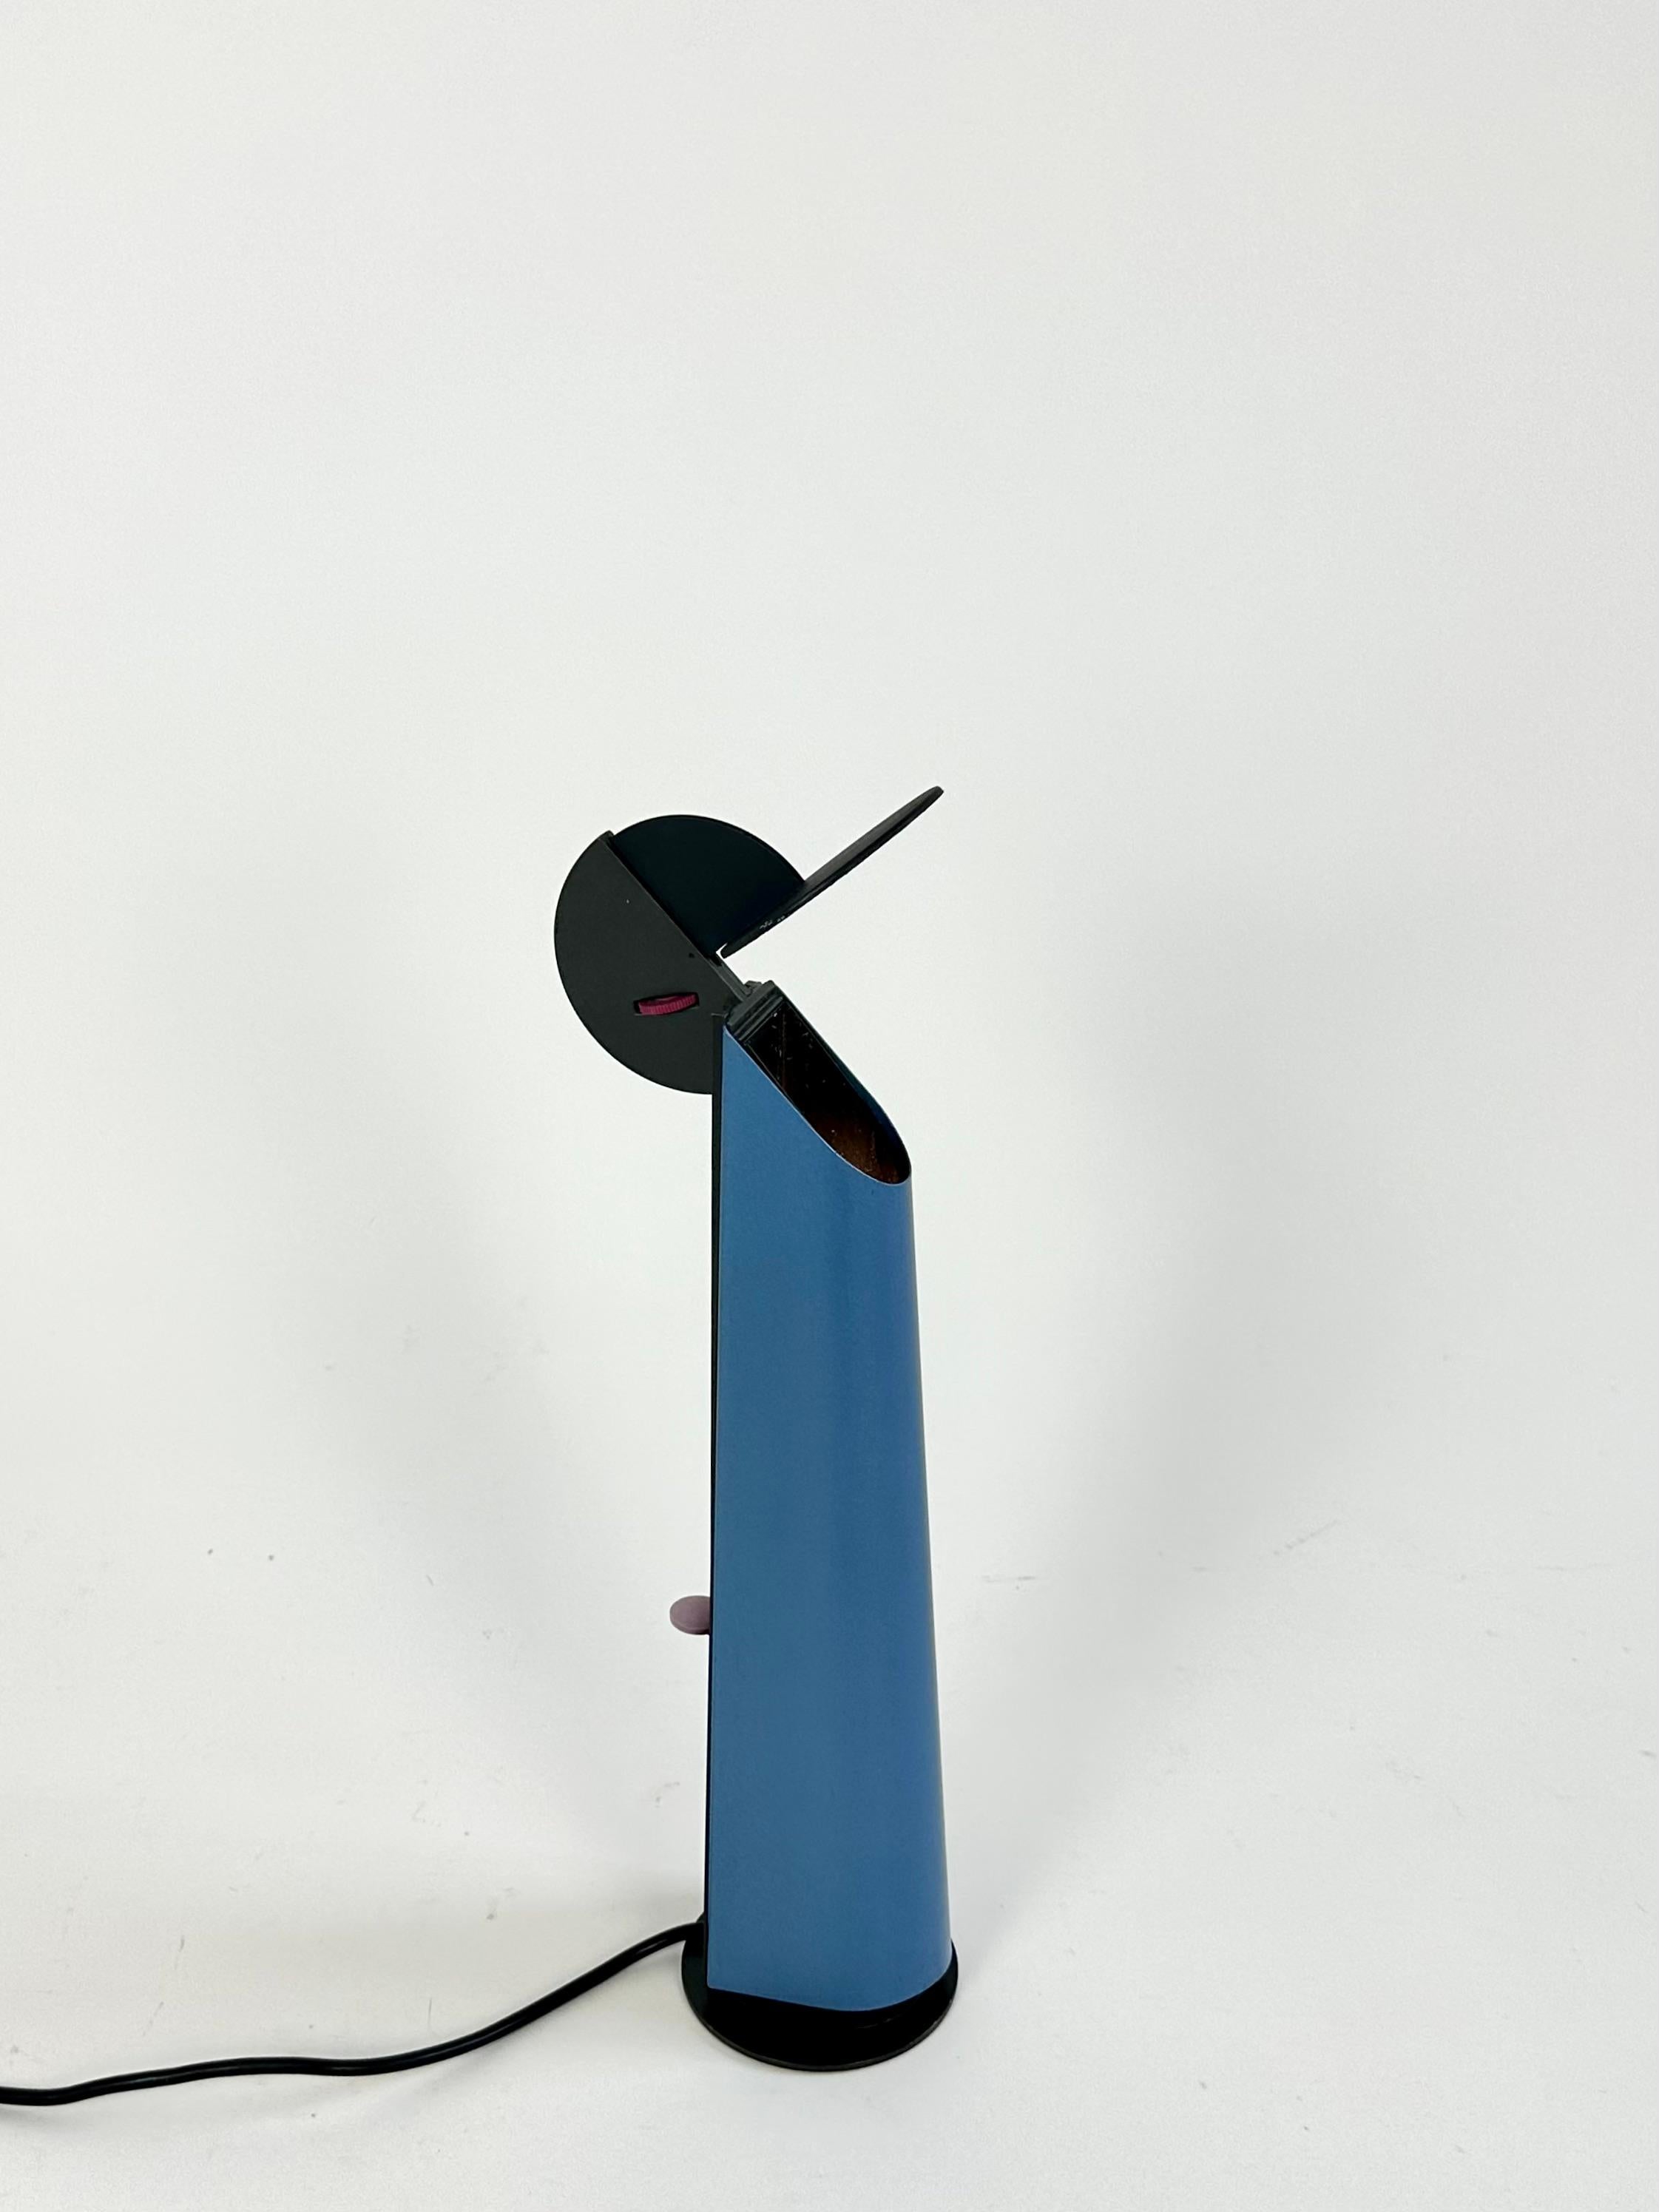 Postmoderne Tischleuchte Gibigiana, entworfen 1980 von Achille Castiglioni für Flos, Italien.

Ein beweglicher Spiegel reflektiert das Licht von einer verborgenen Quelle im Inneren der Leuchte weg. Die Lichtintensität wird über einen Dimmer an der